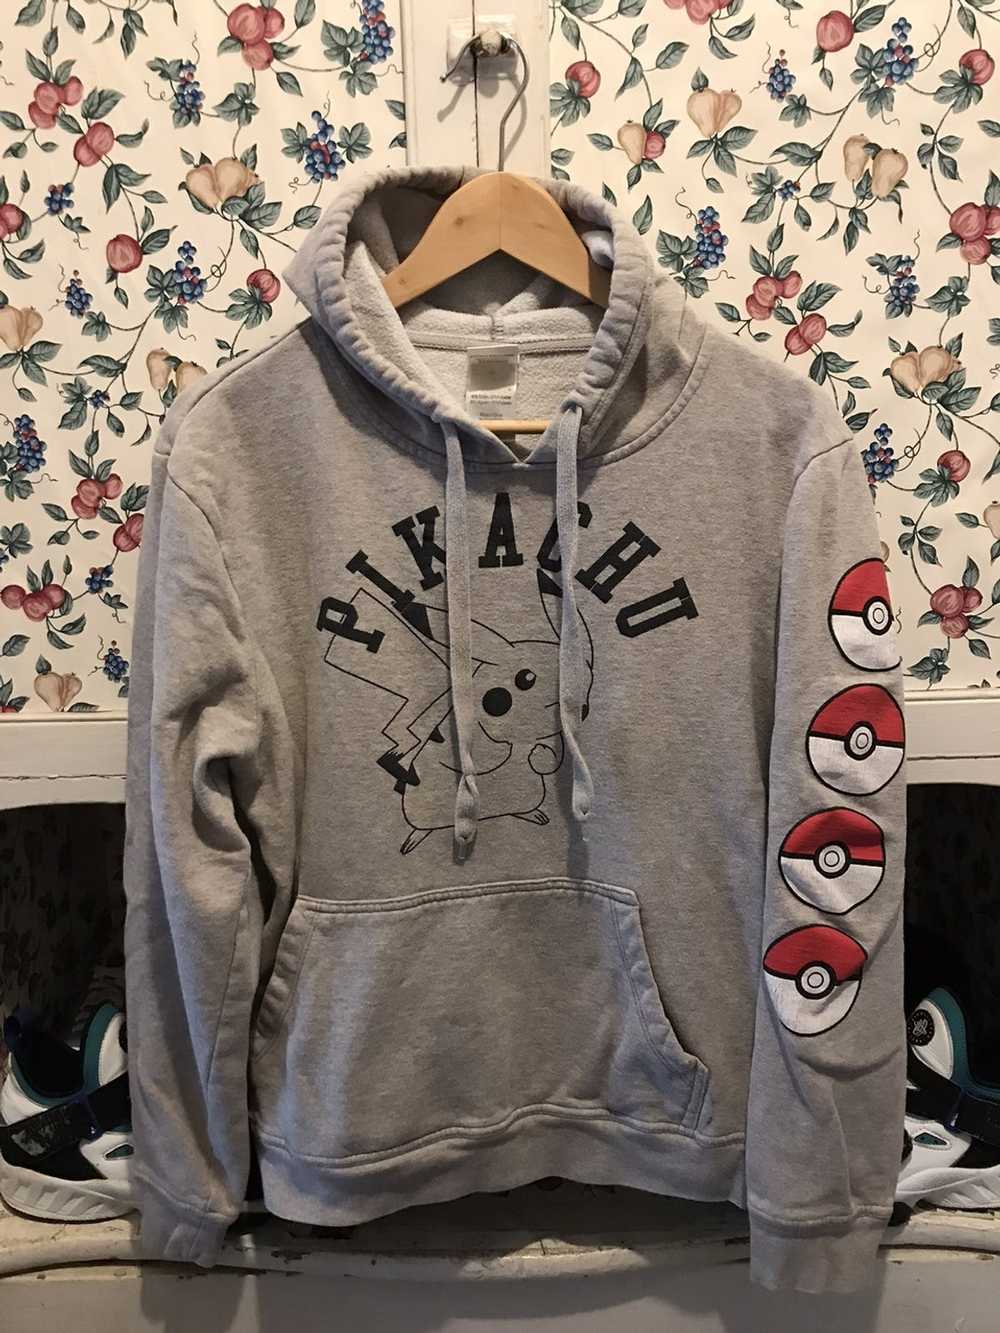 Pokemon sweatshirt